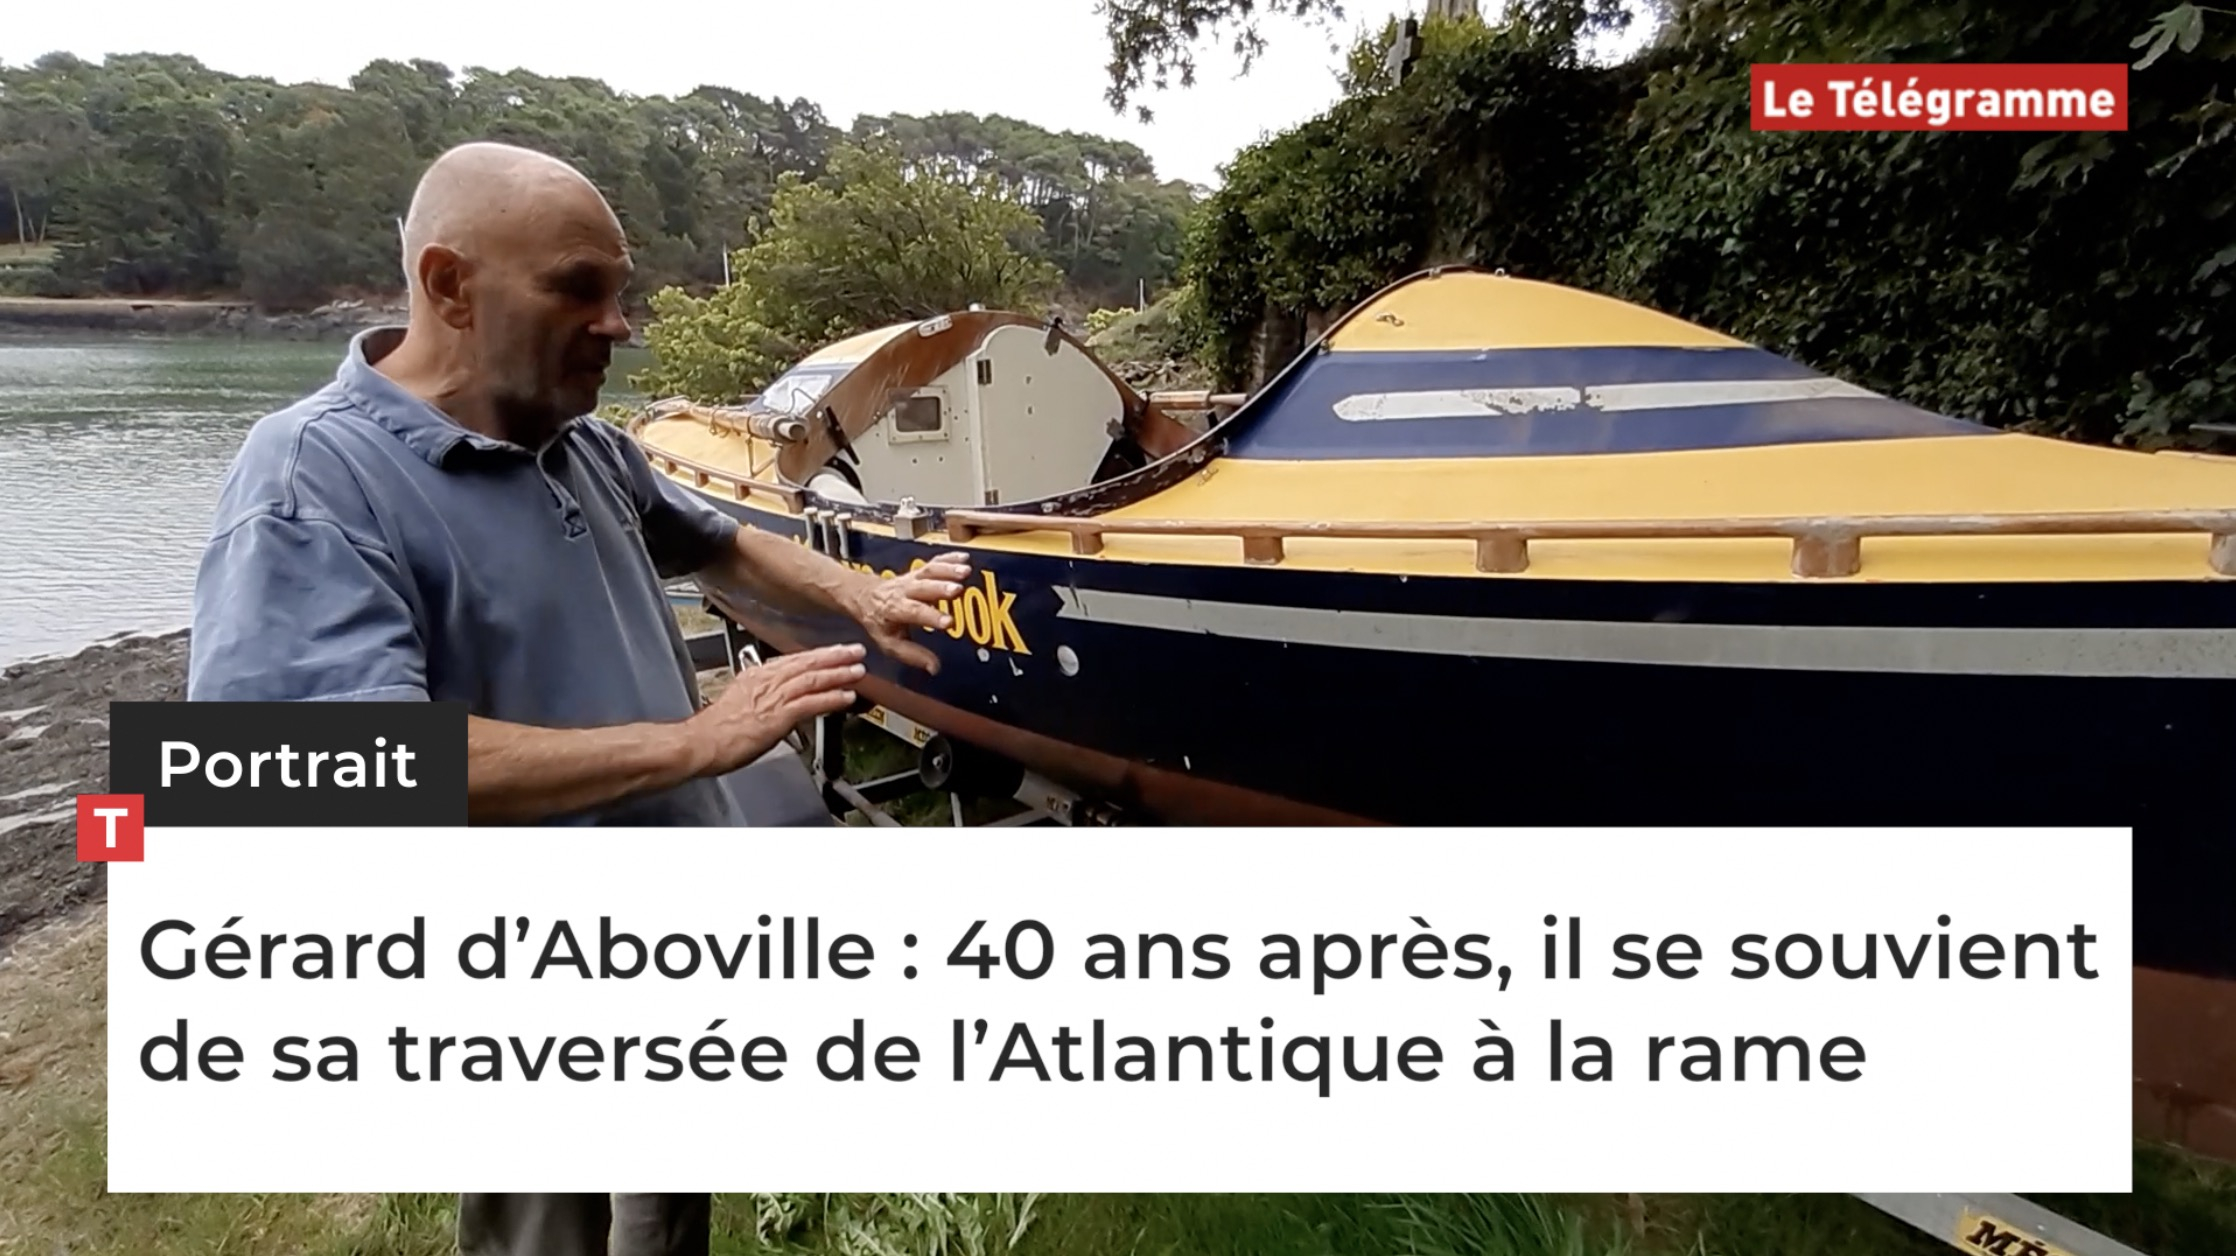 Gérard d’Aboville : 40 ans après, il se souvient de sa traversée de l’Atlantique à la rame (Le Télégramme)